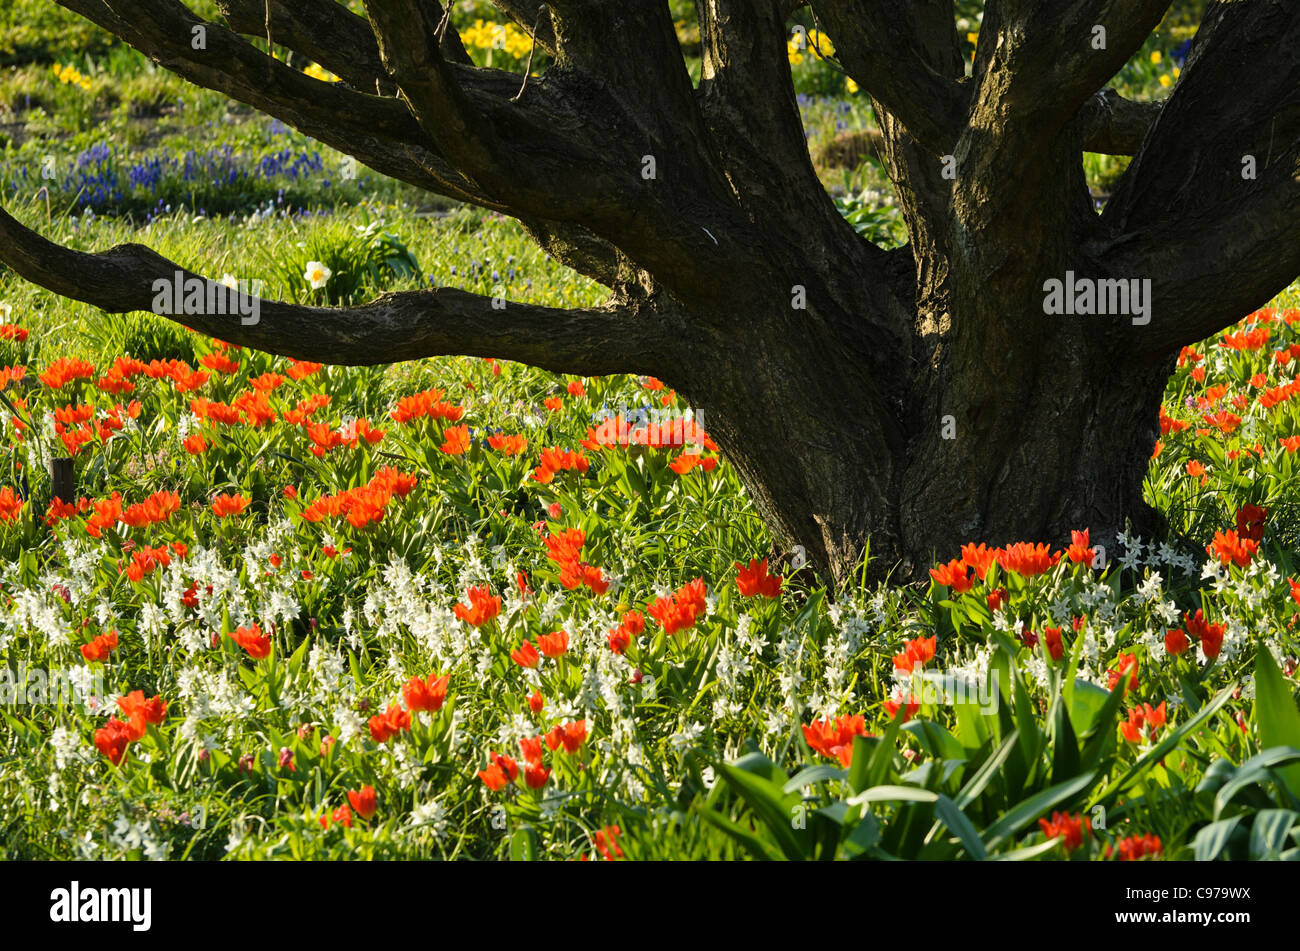 Nodding Star-of-Bethlehem (Ornithogalum nutans) and tulips (Tulipa) Stock Photo